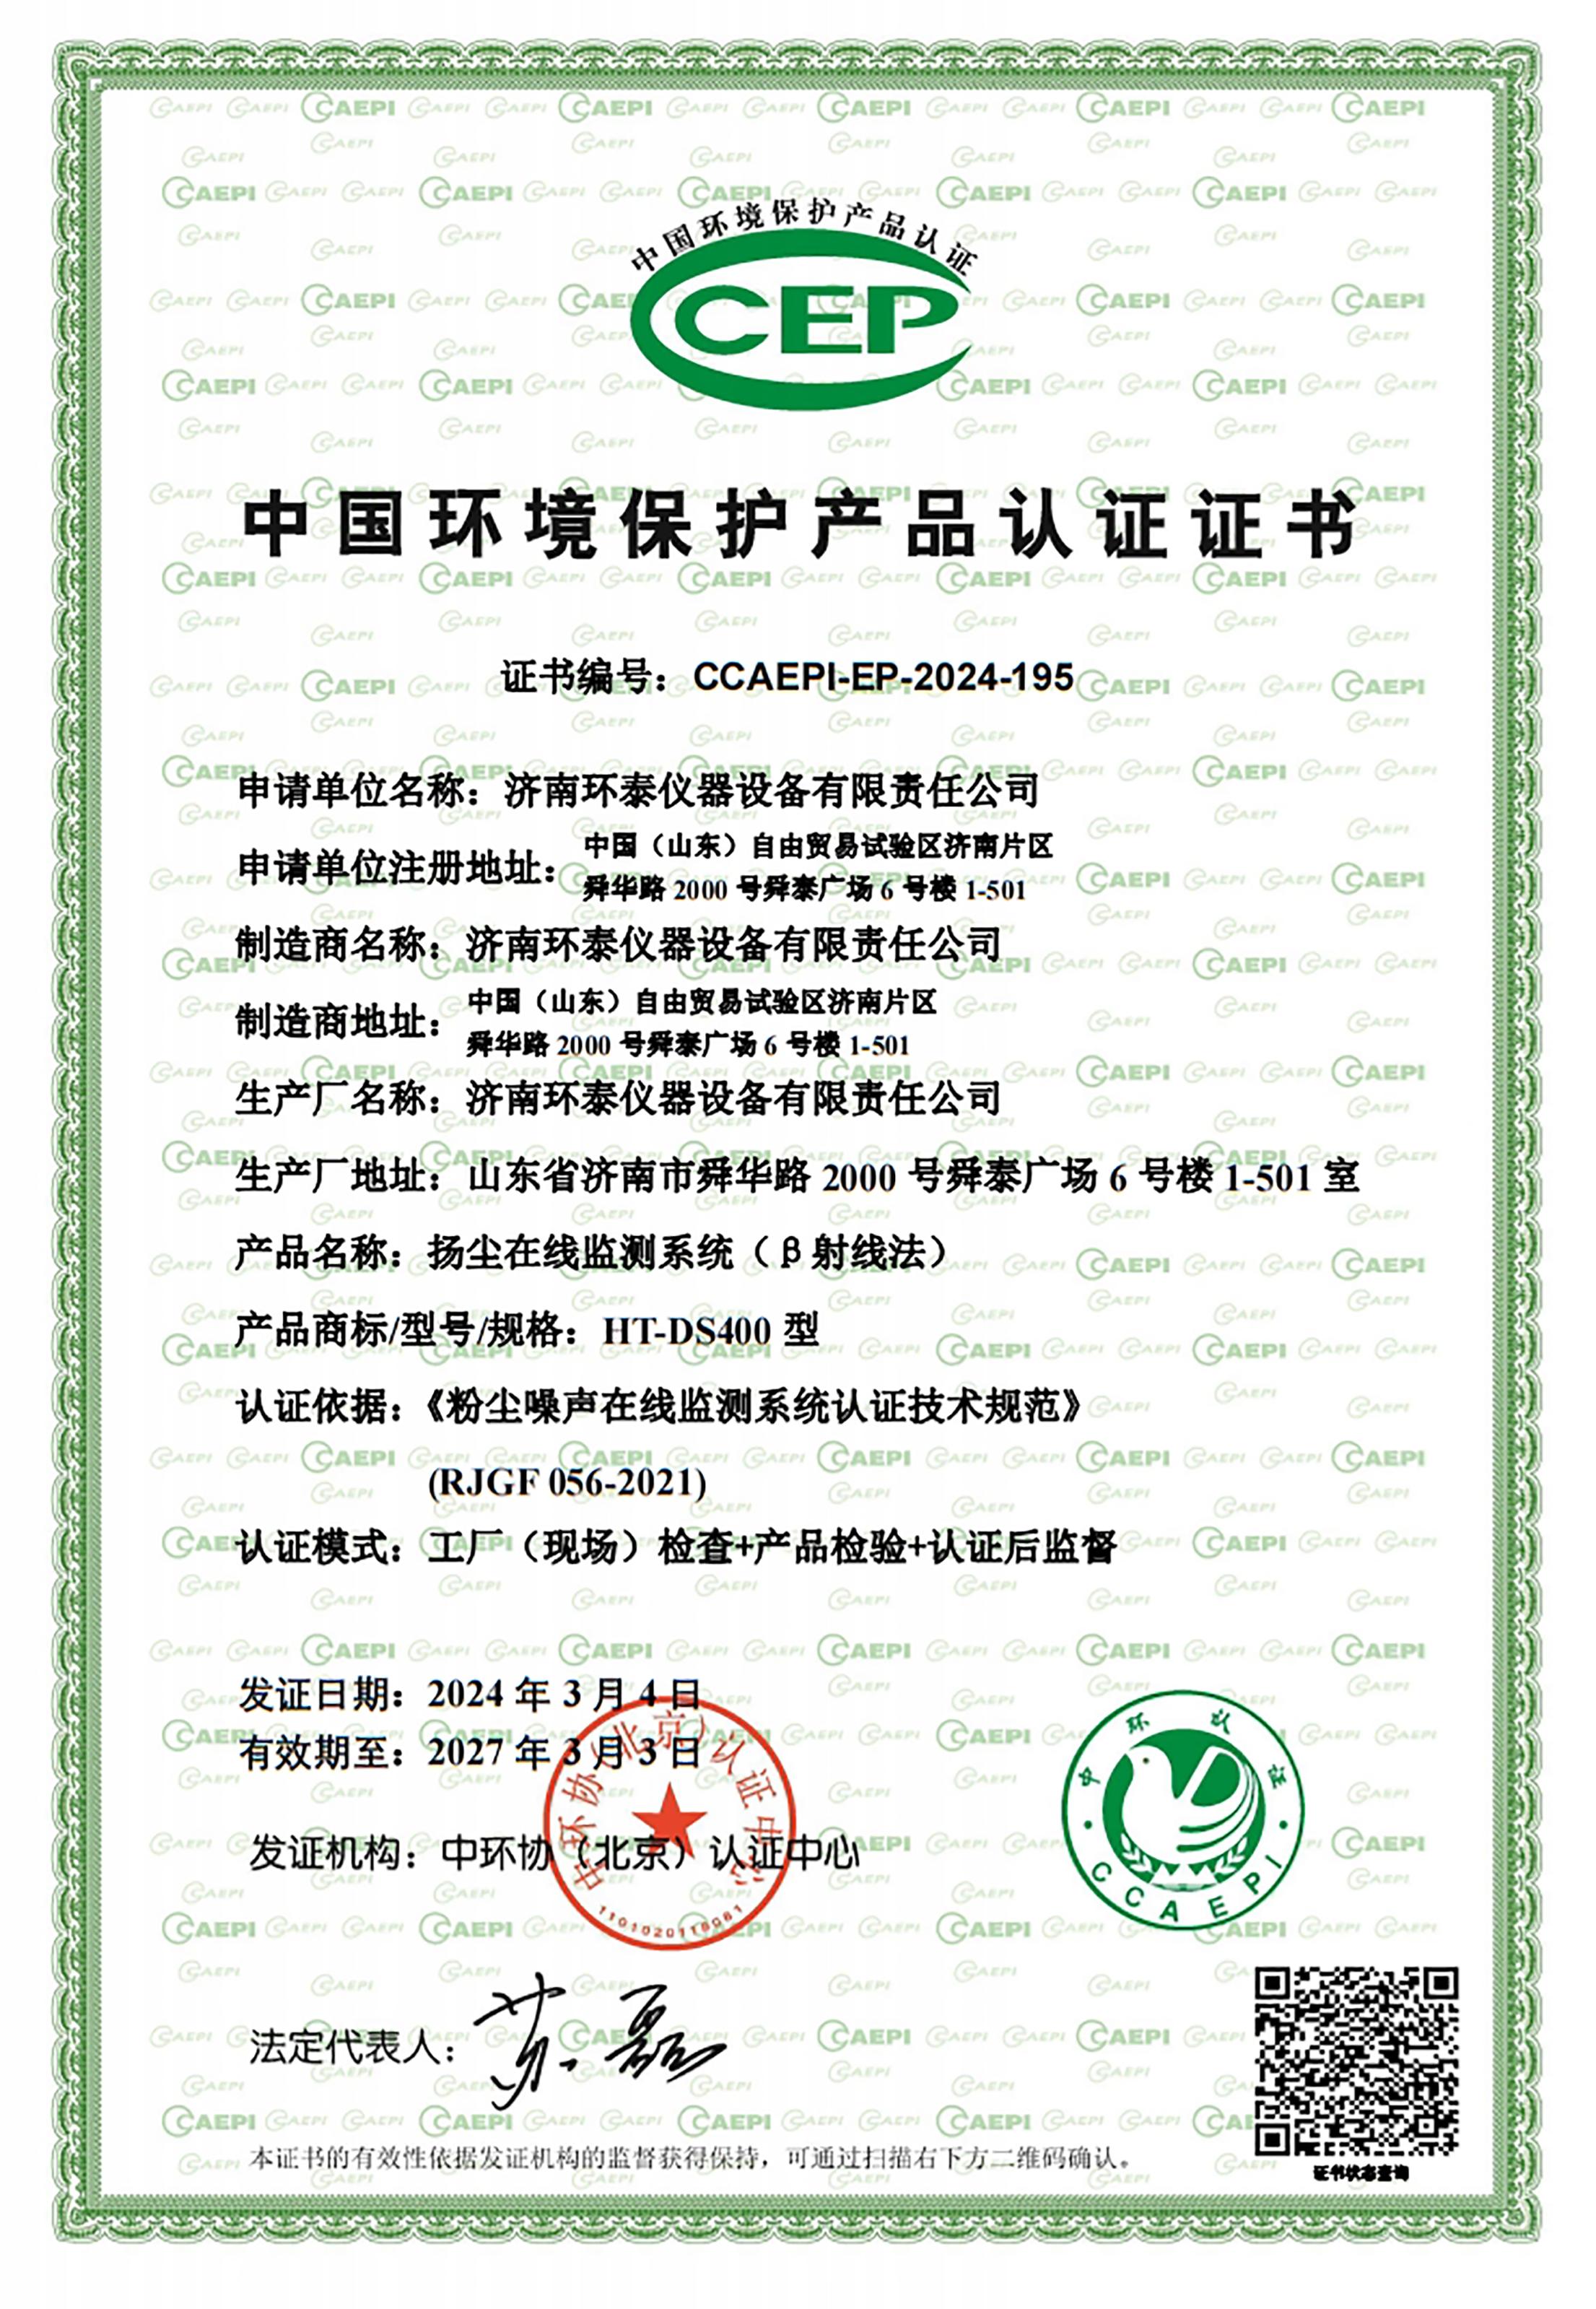 β射线CCEP中国环境保护产品认证证书.jpg